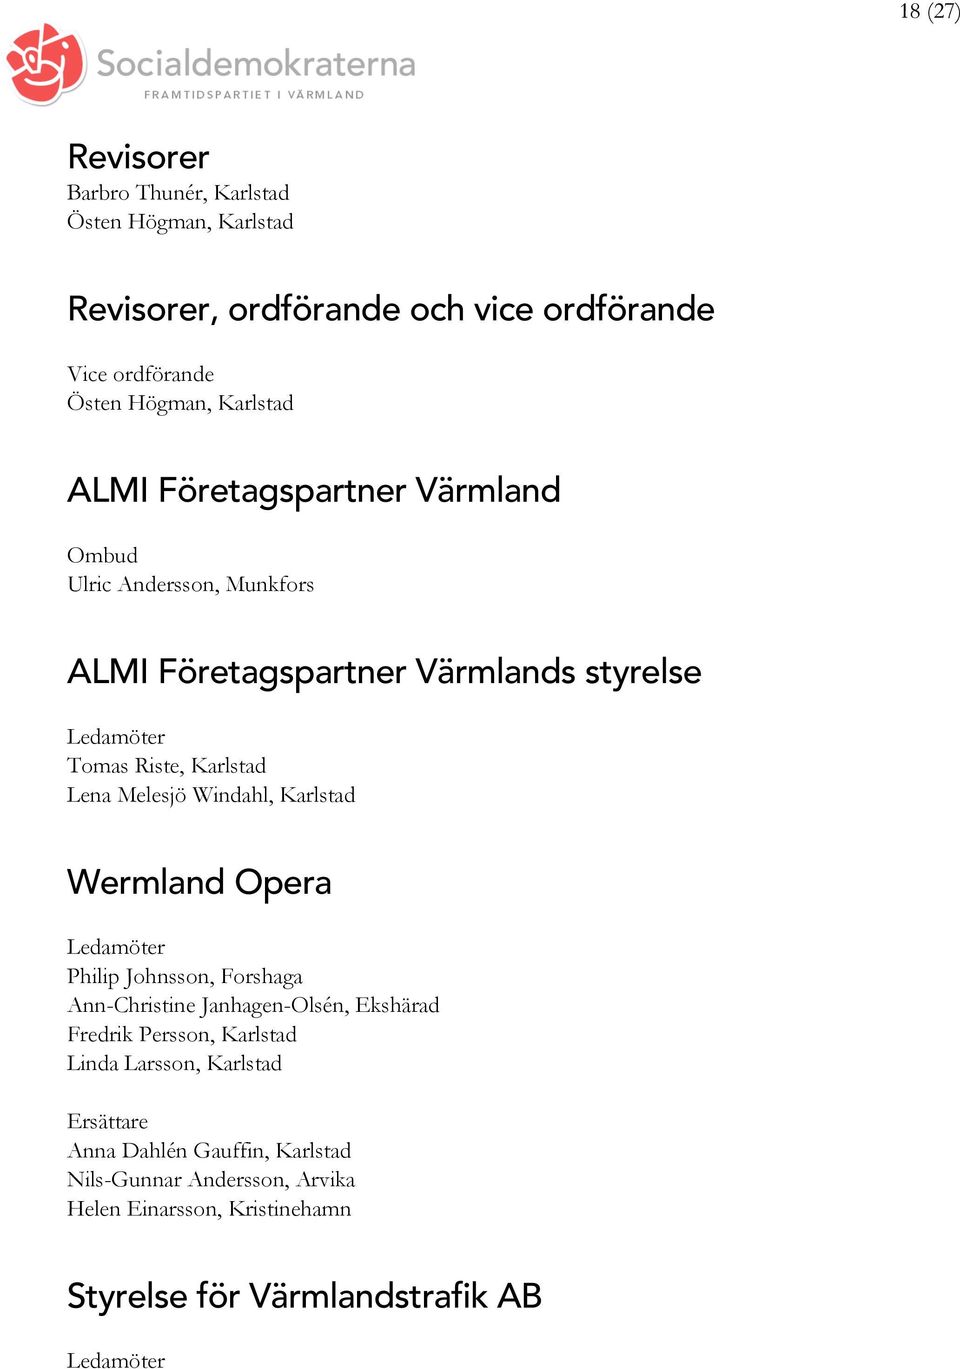 Karlstad Wermland Opera Philip Johnsson, Forshaga Ann-Christine Janhagen-Olsén, Ekshärad Fredrik Persson, Karlstad